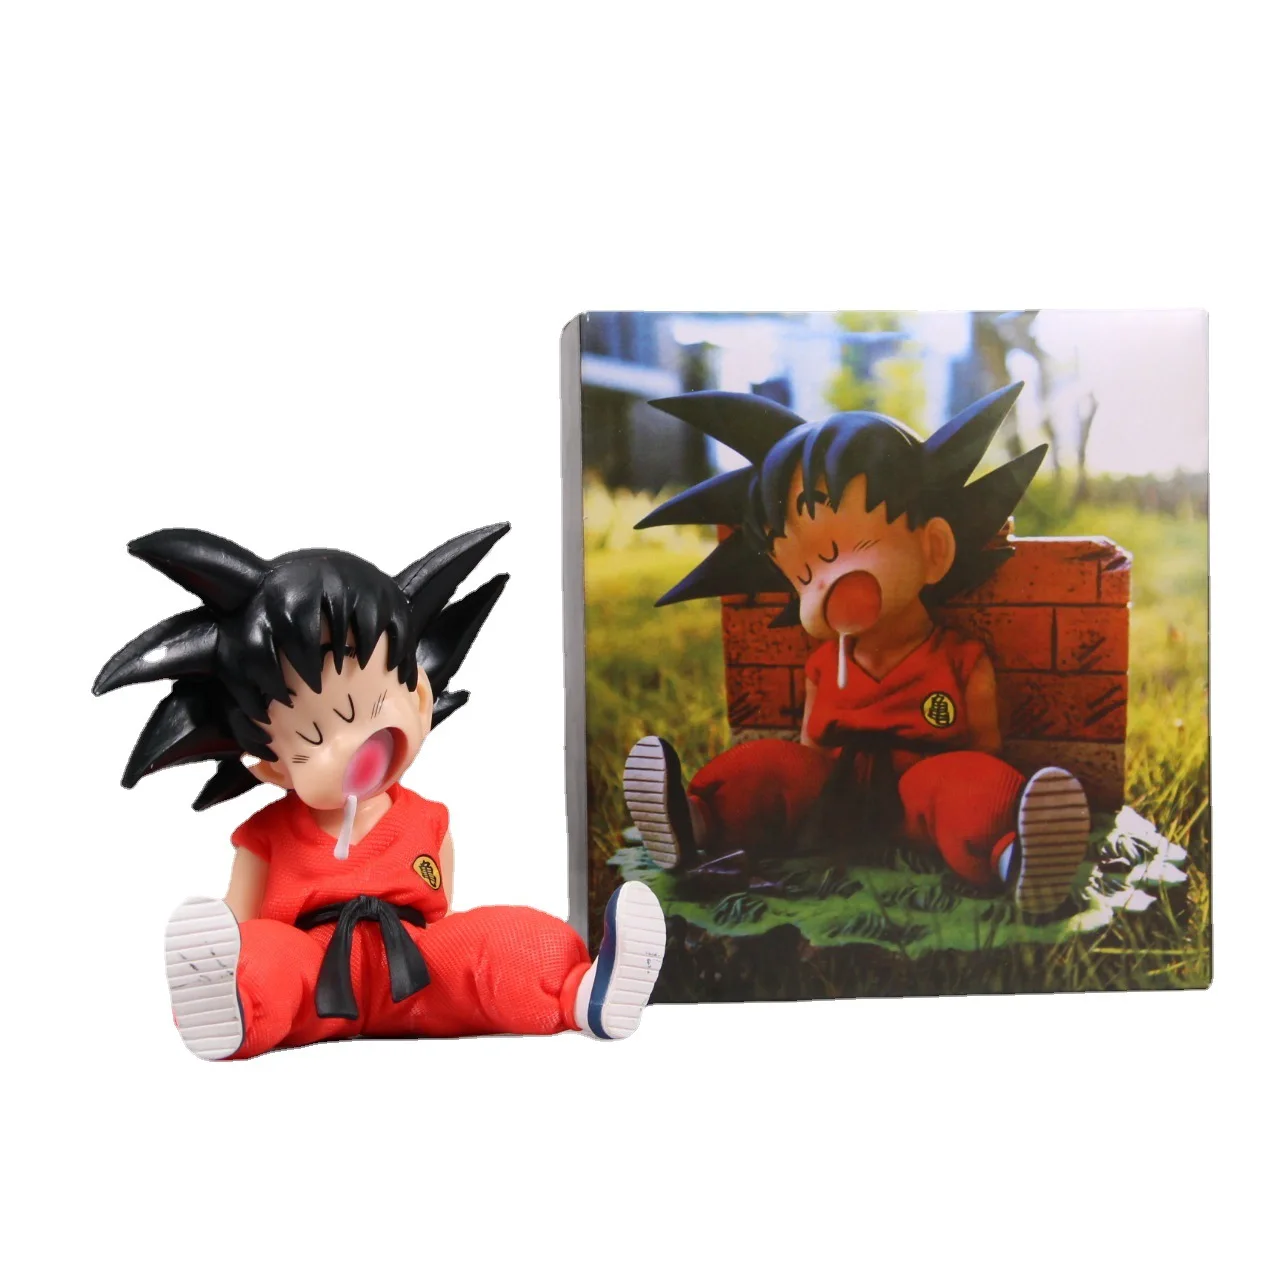 Boneco Goku Sleep Coleciomavel PVC 10 CM - Pronta Entrega - Rabello Store -  Tênis, Vestuários, Lifestyle e muito mais